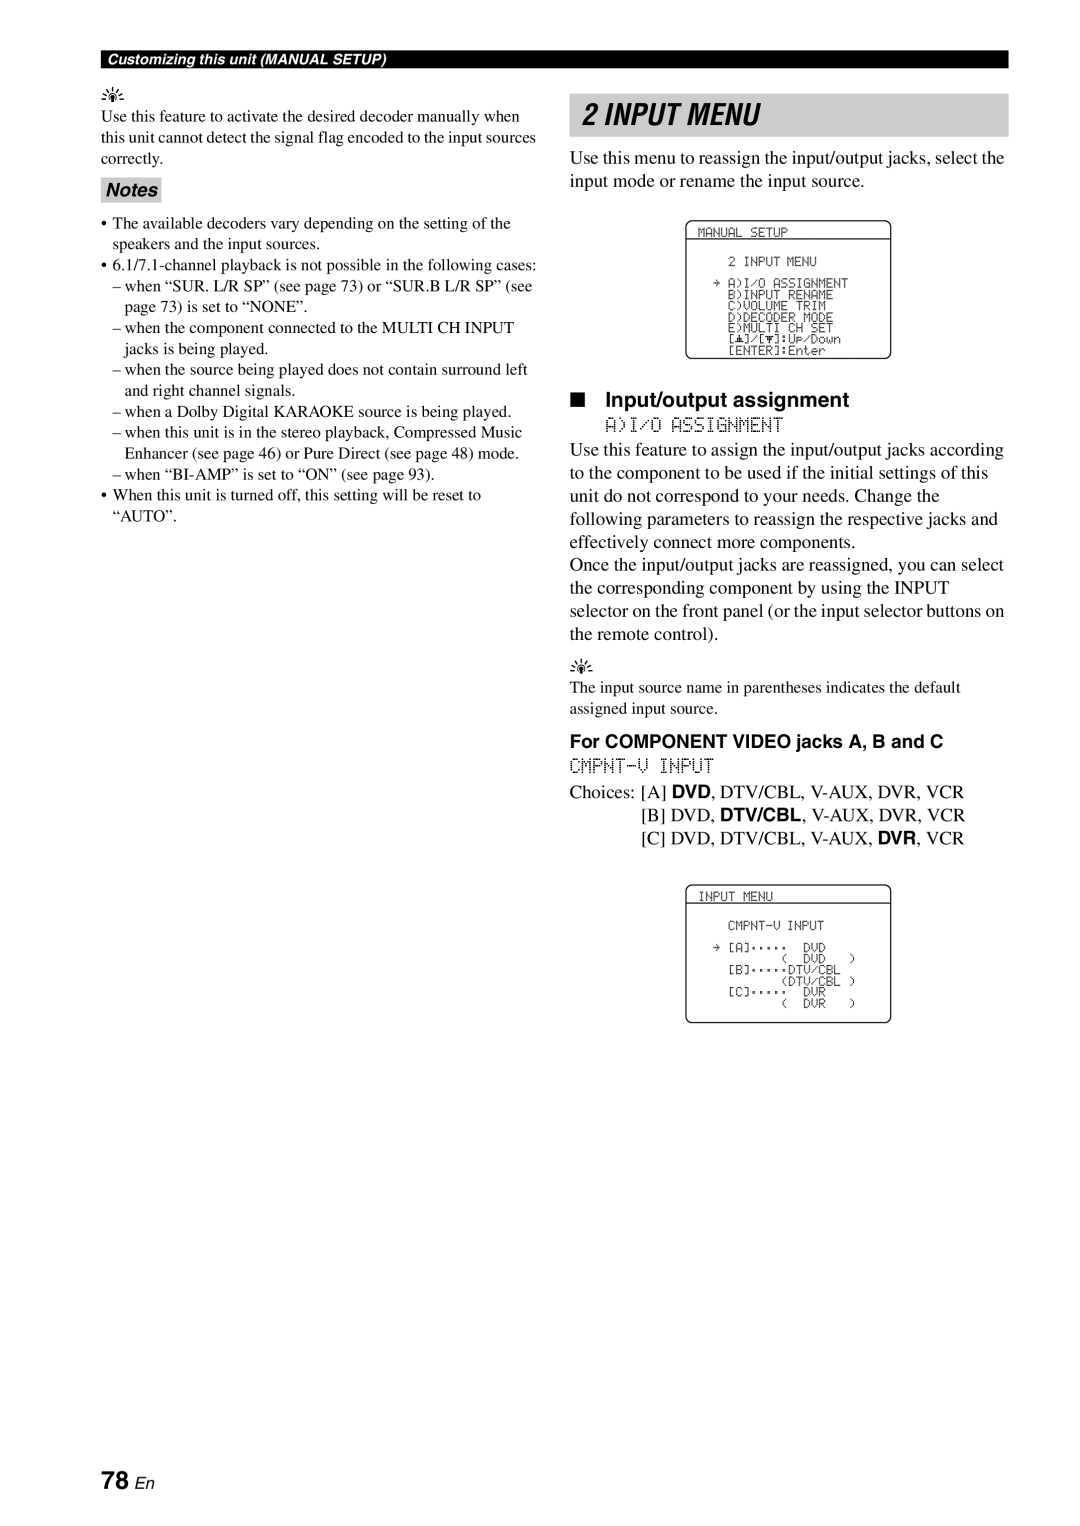 Yamaha HTR-6080 owner manual Input Menu, 78 En, Input/output assignment 